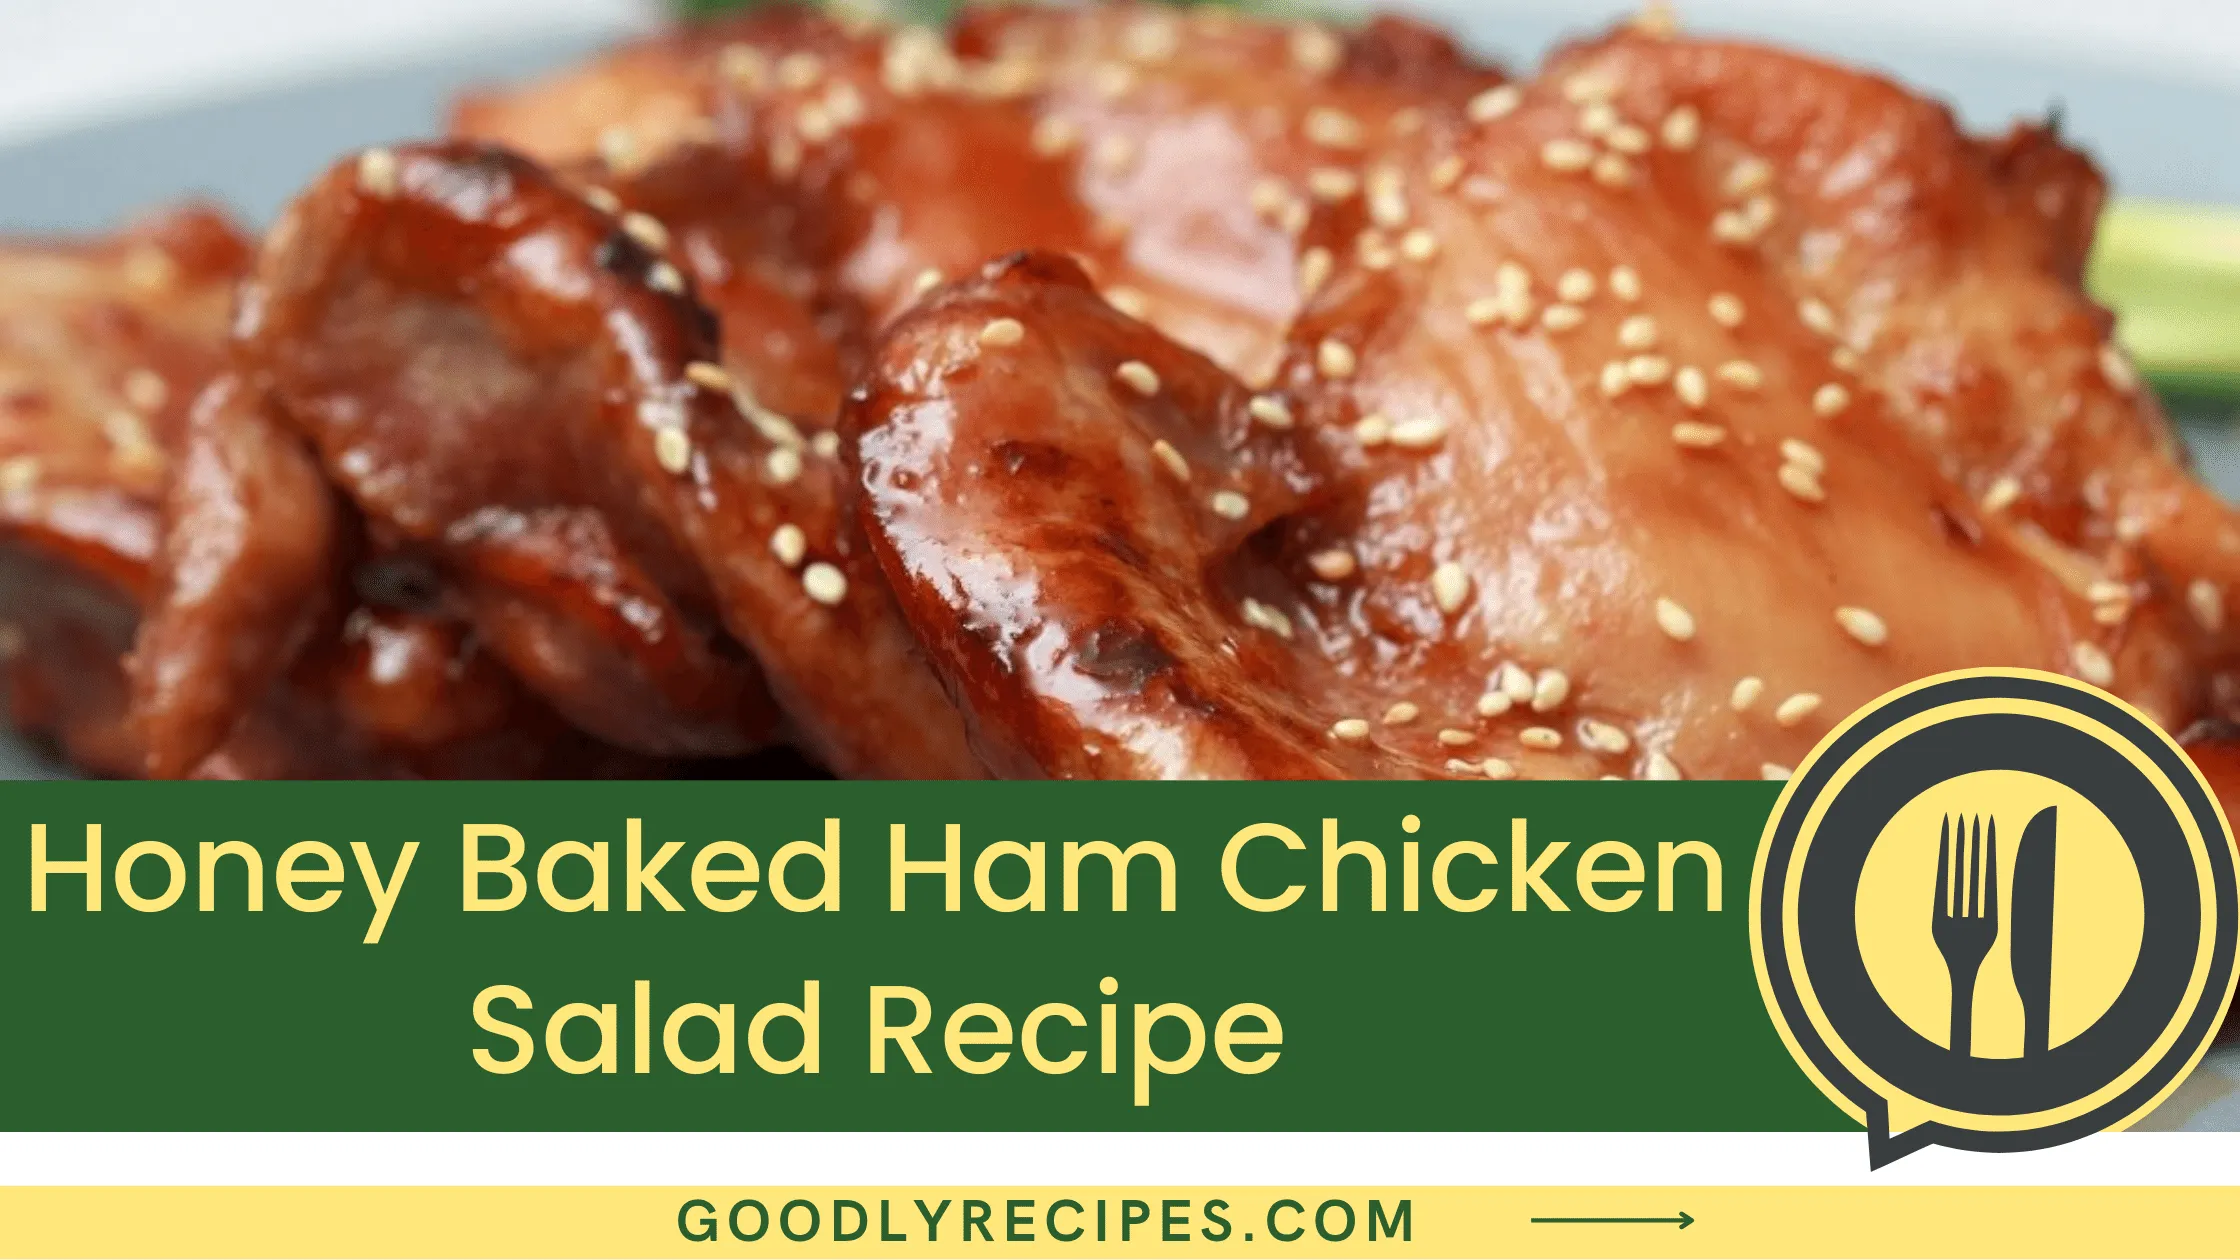 Honey Baked Ham Chicken Salad Recipe